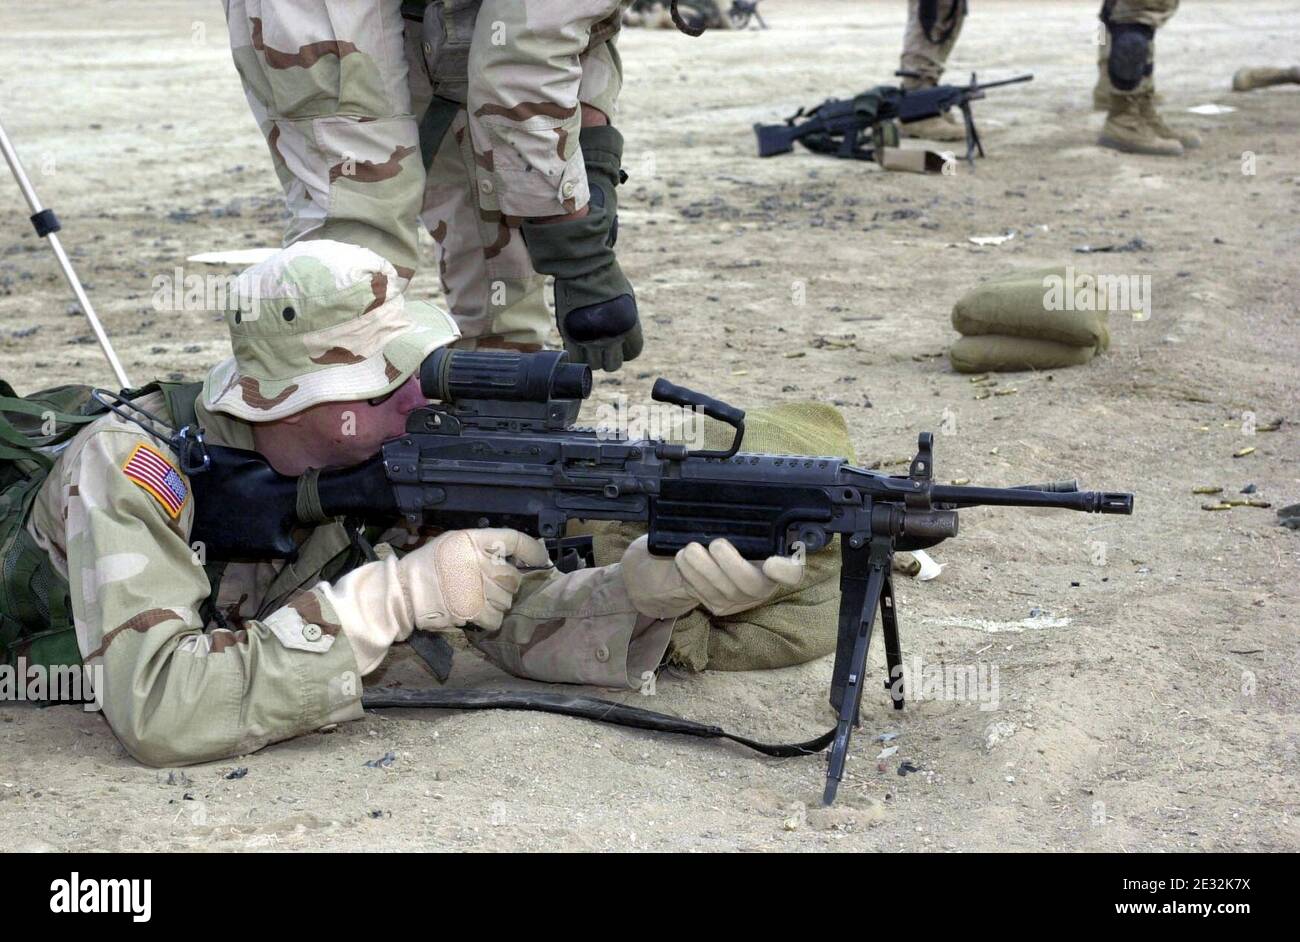 M249 FN MINIMI DA-SD-04-02056. Stock Photo